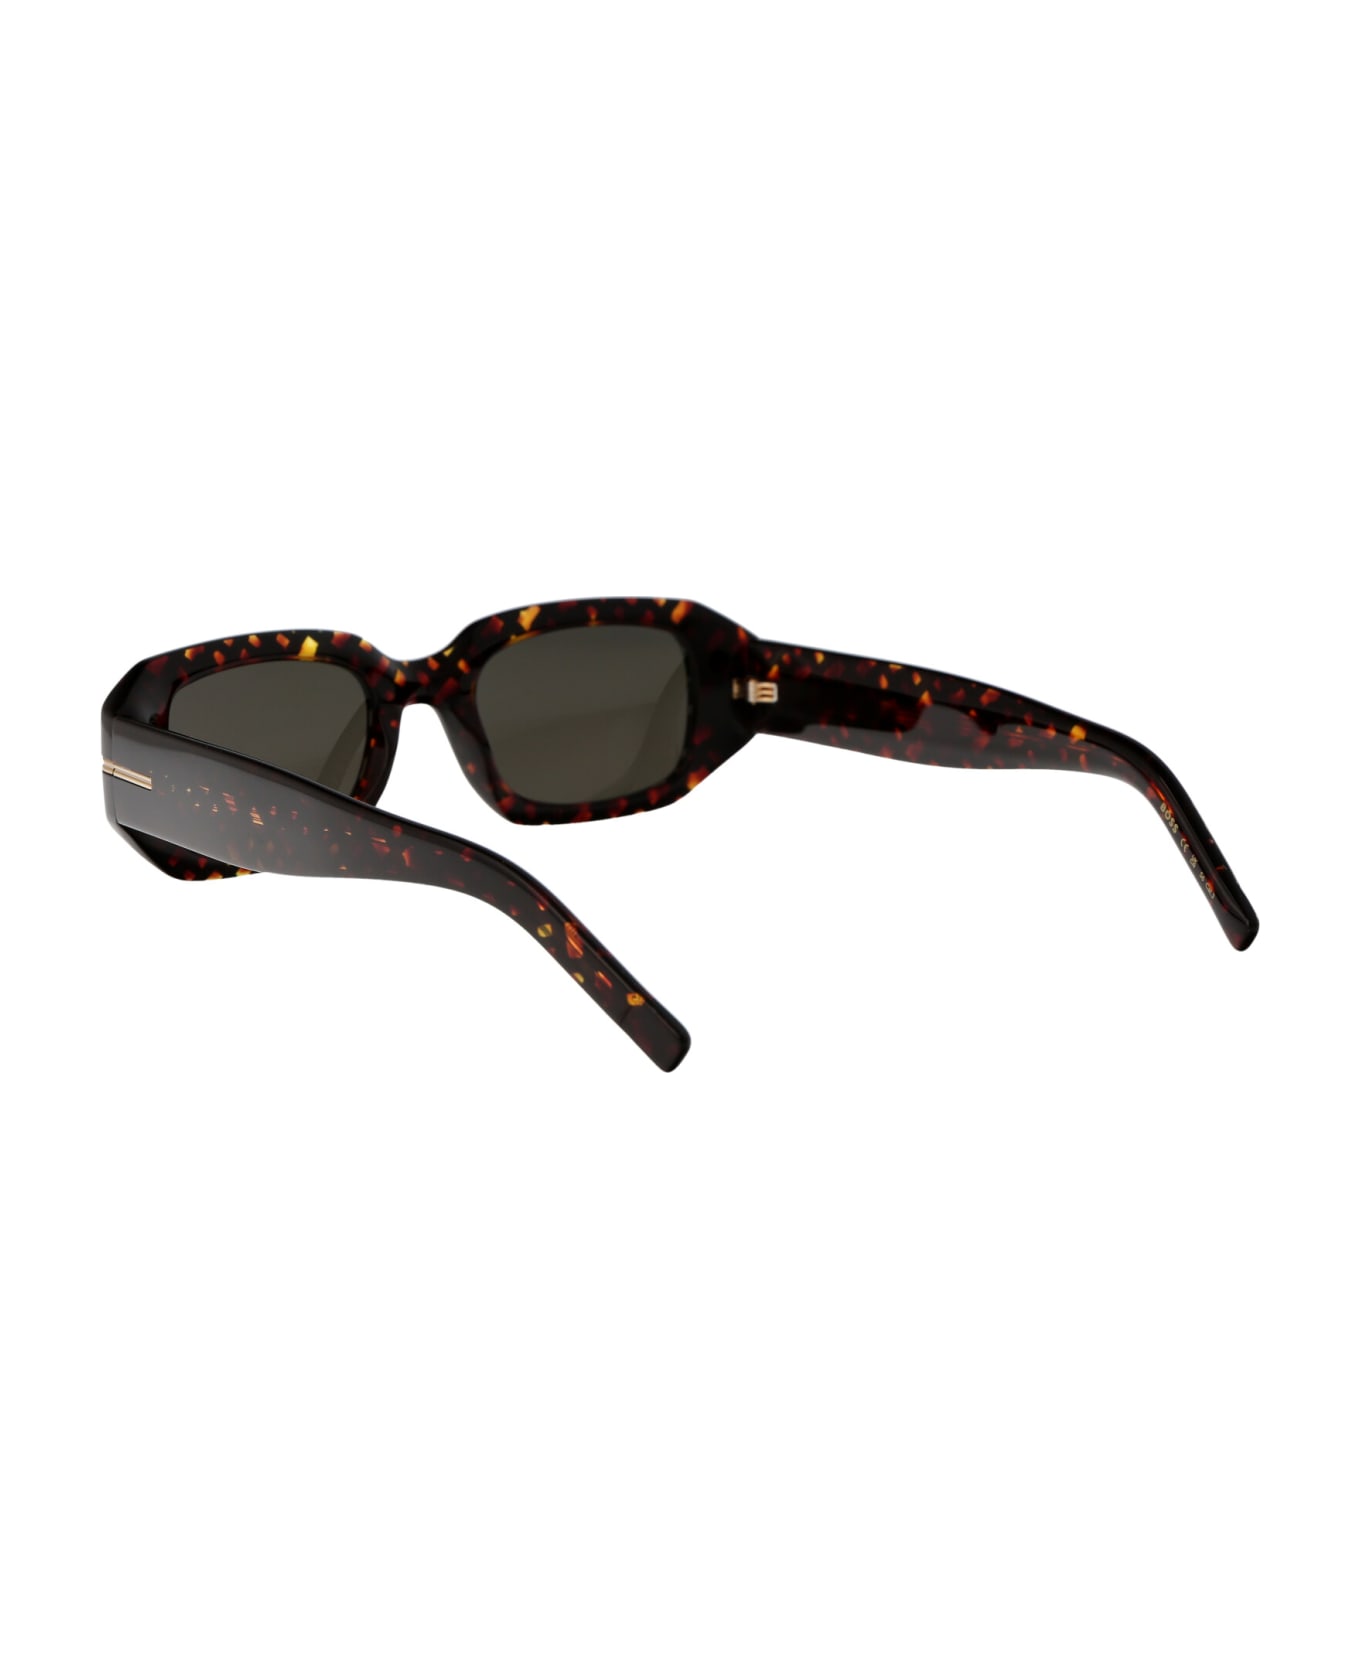 Hugo Boss Boss 1608/s Sunglasses - 2VMIR HAVANA PATTERN サングラス